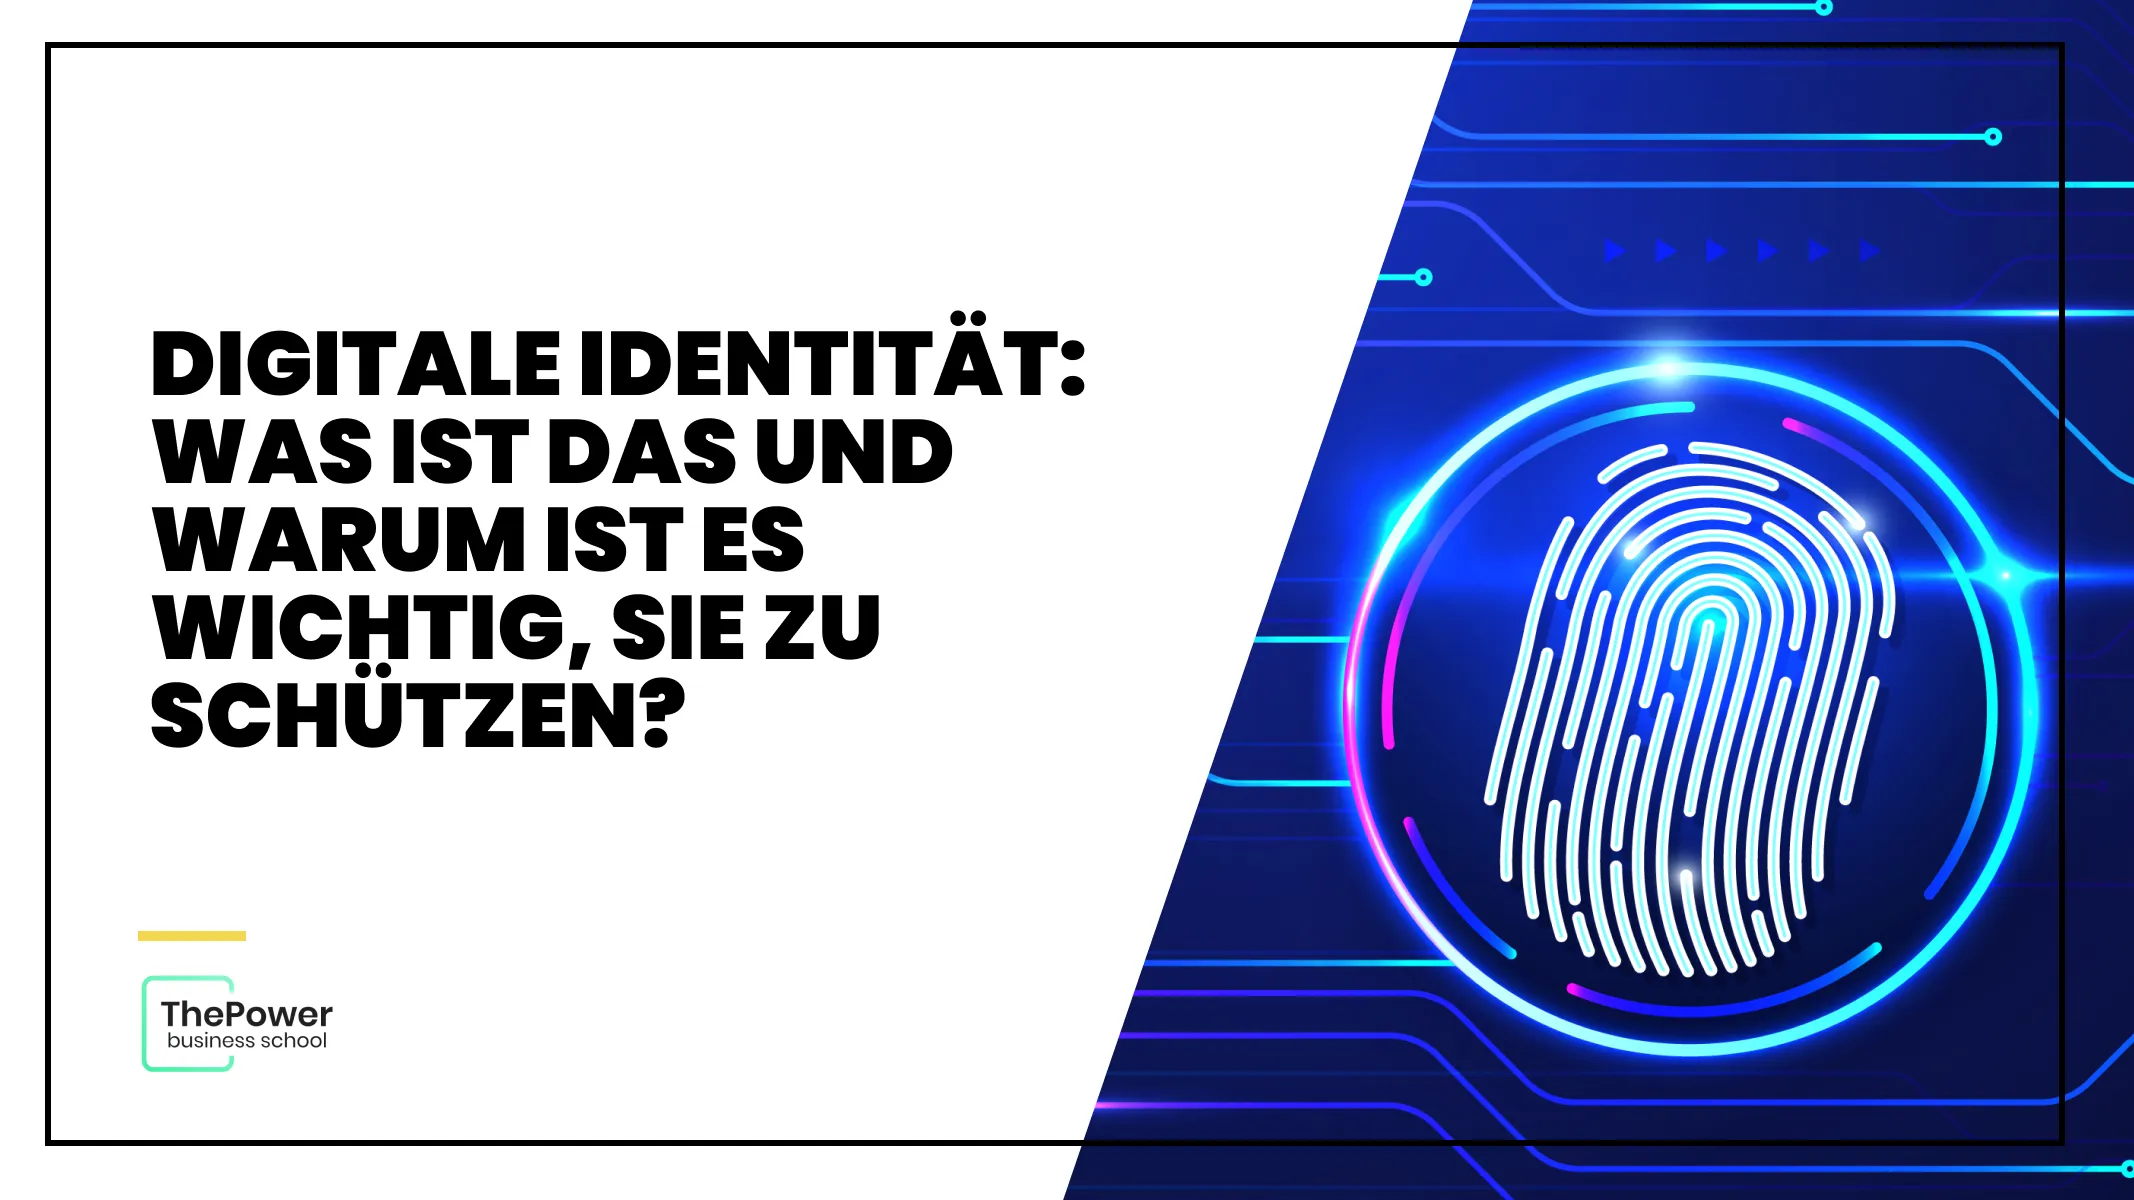 Digitale Identität: Was ist das und warum ist es wichtig, sie zu schützen?